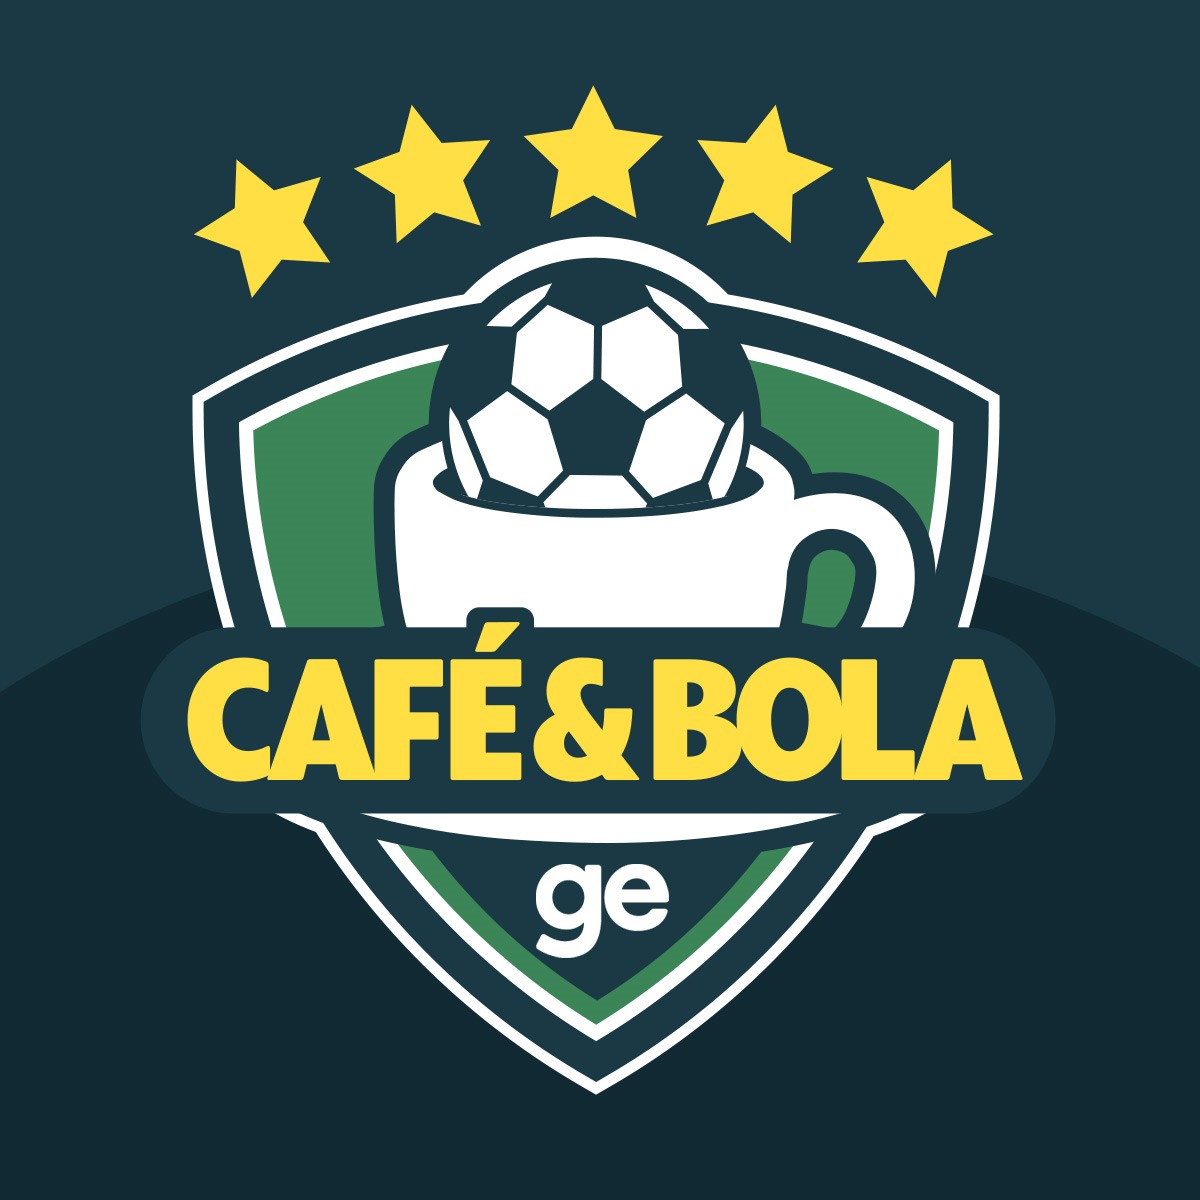 Café & Bola #33 - Fogão respira e Fla vence com “DJ”